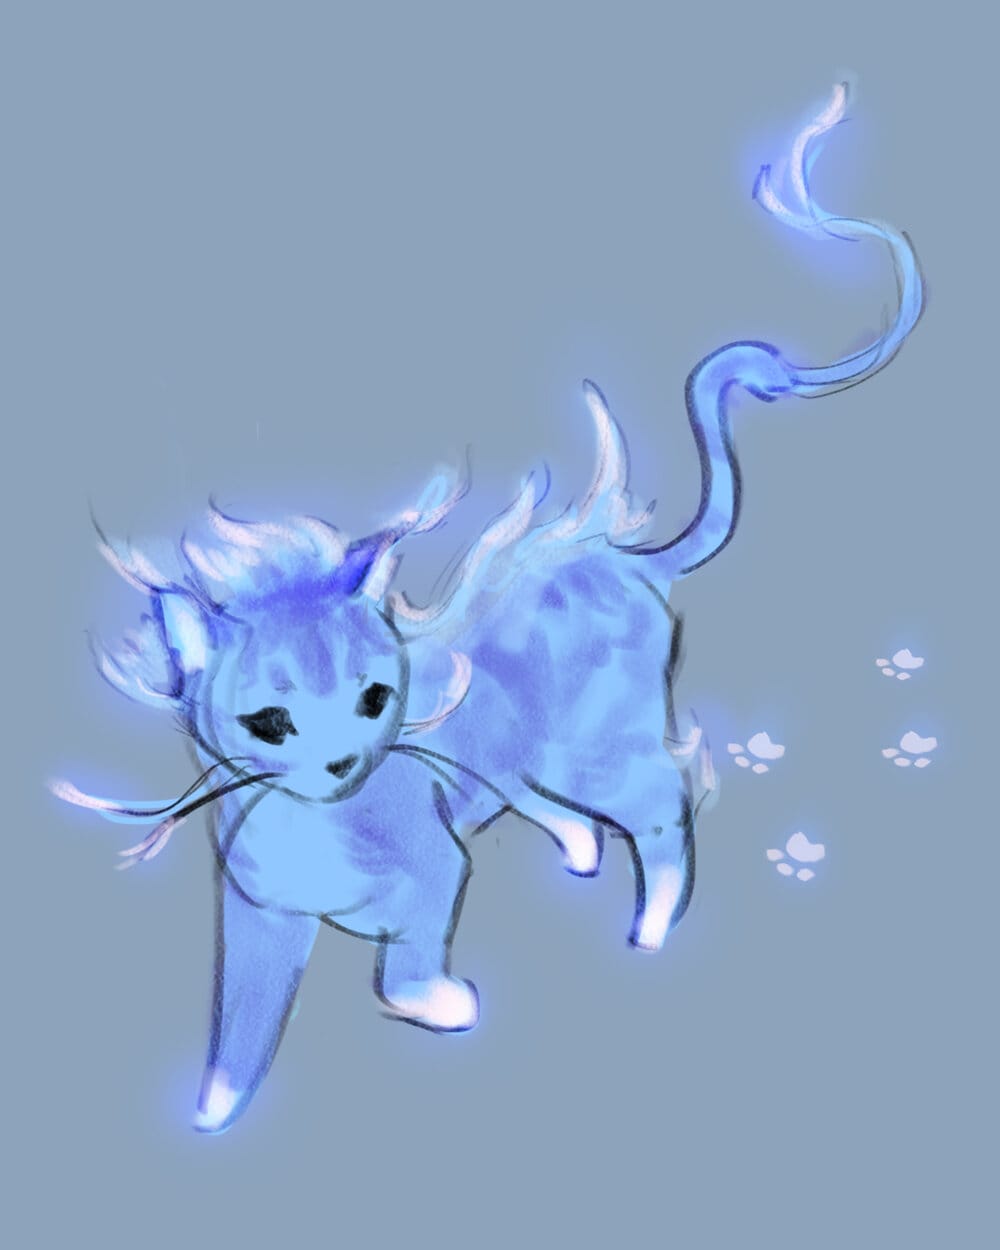 design of the blue cat Rio